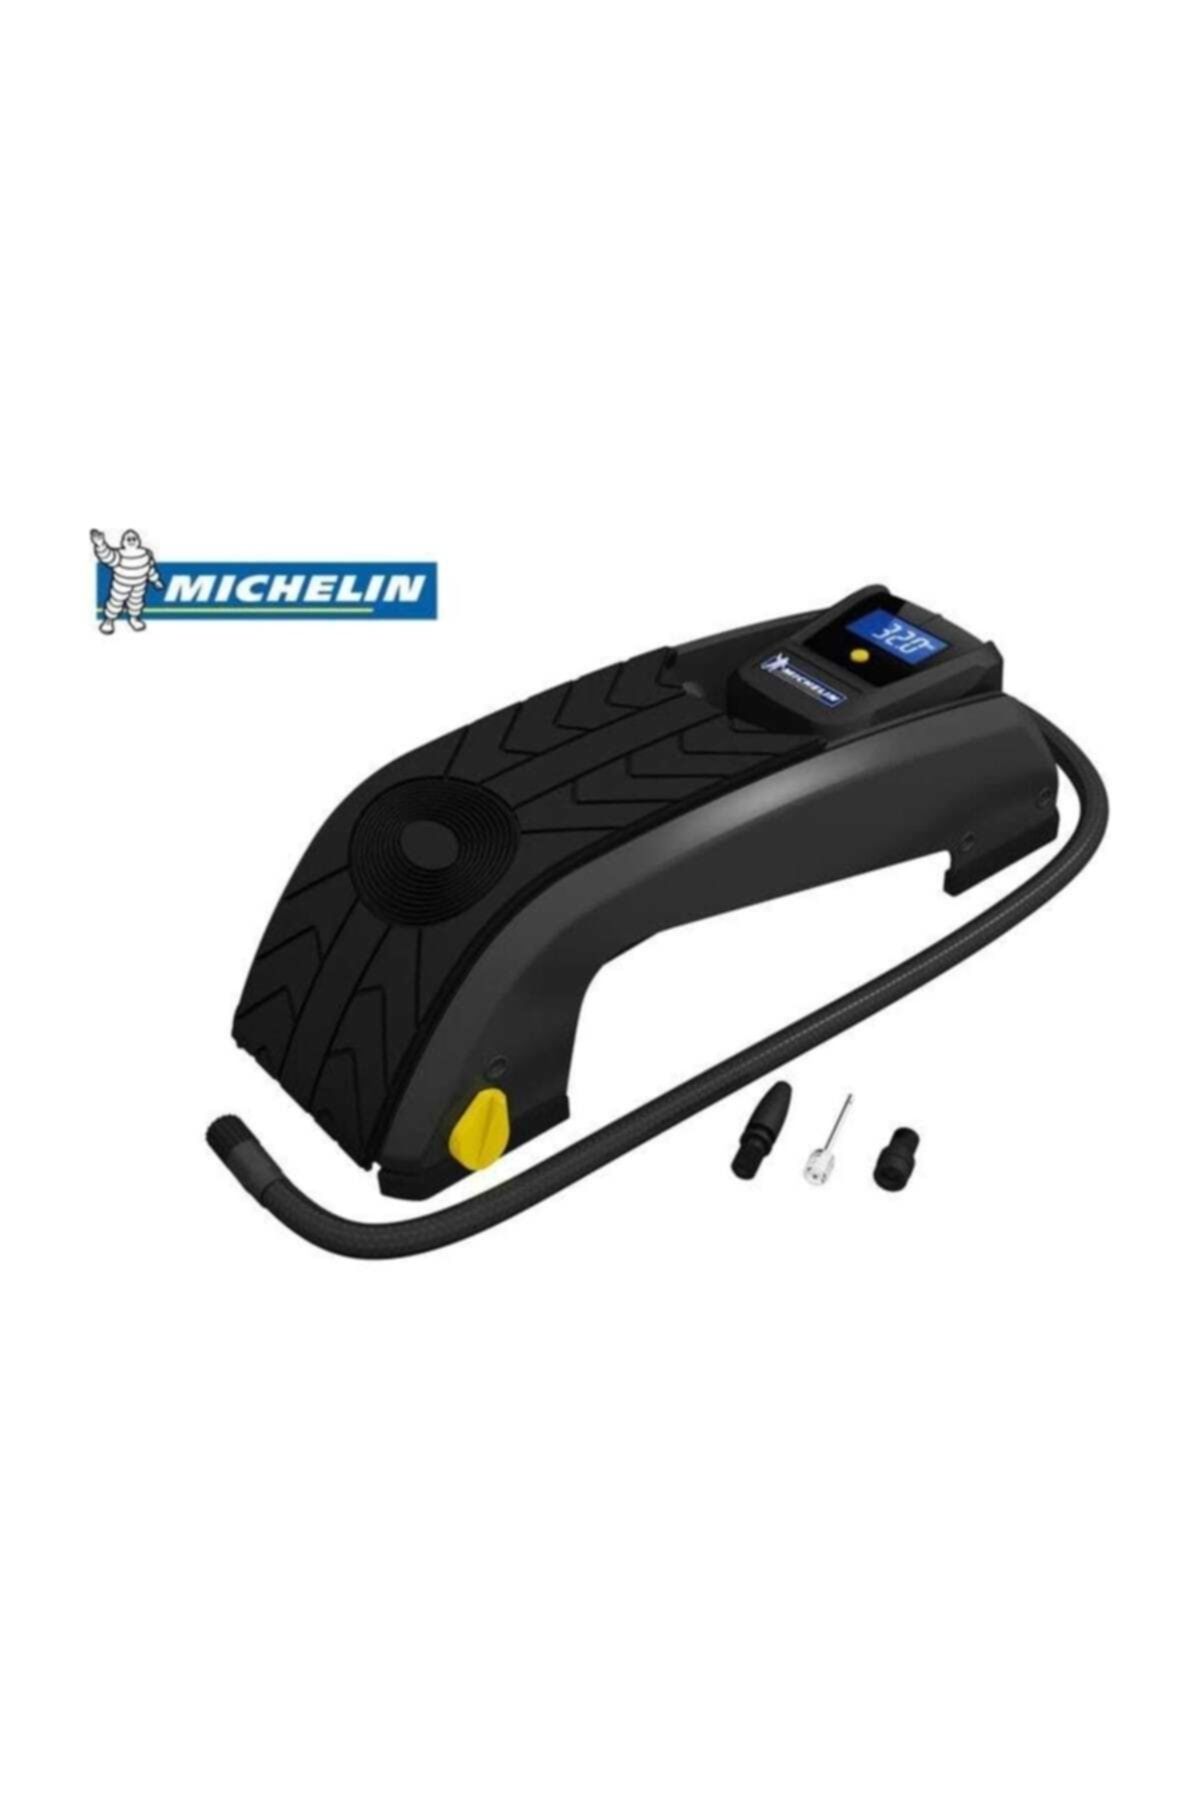 Michelin Mc12208 Dijital Basınç Göstergeli Ayak Pompası